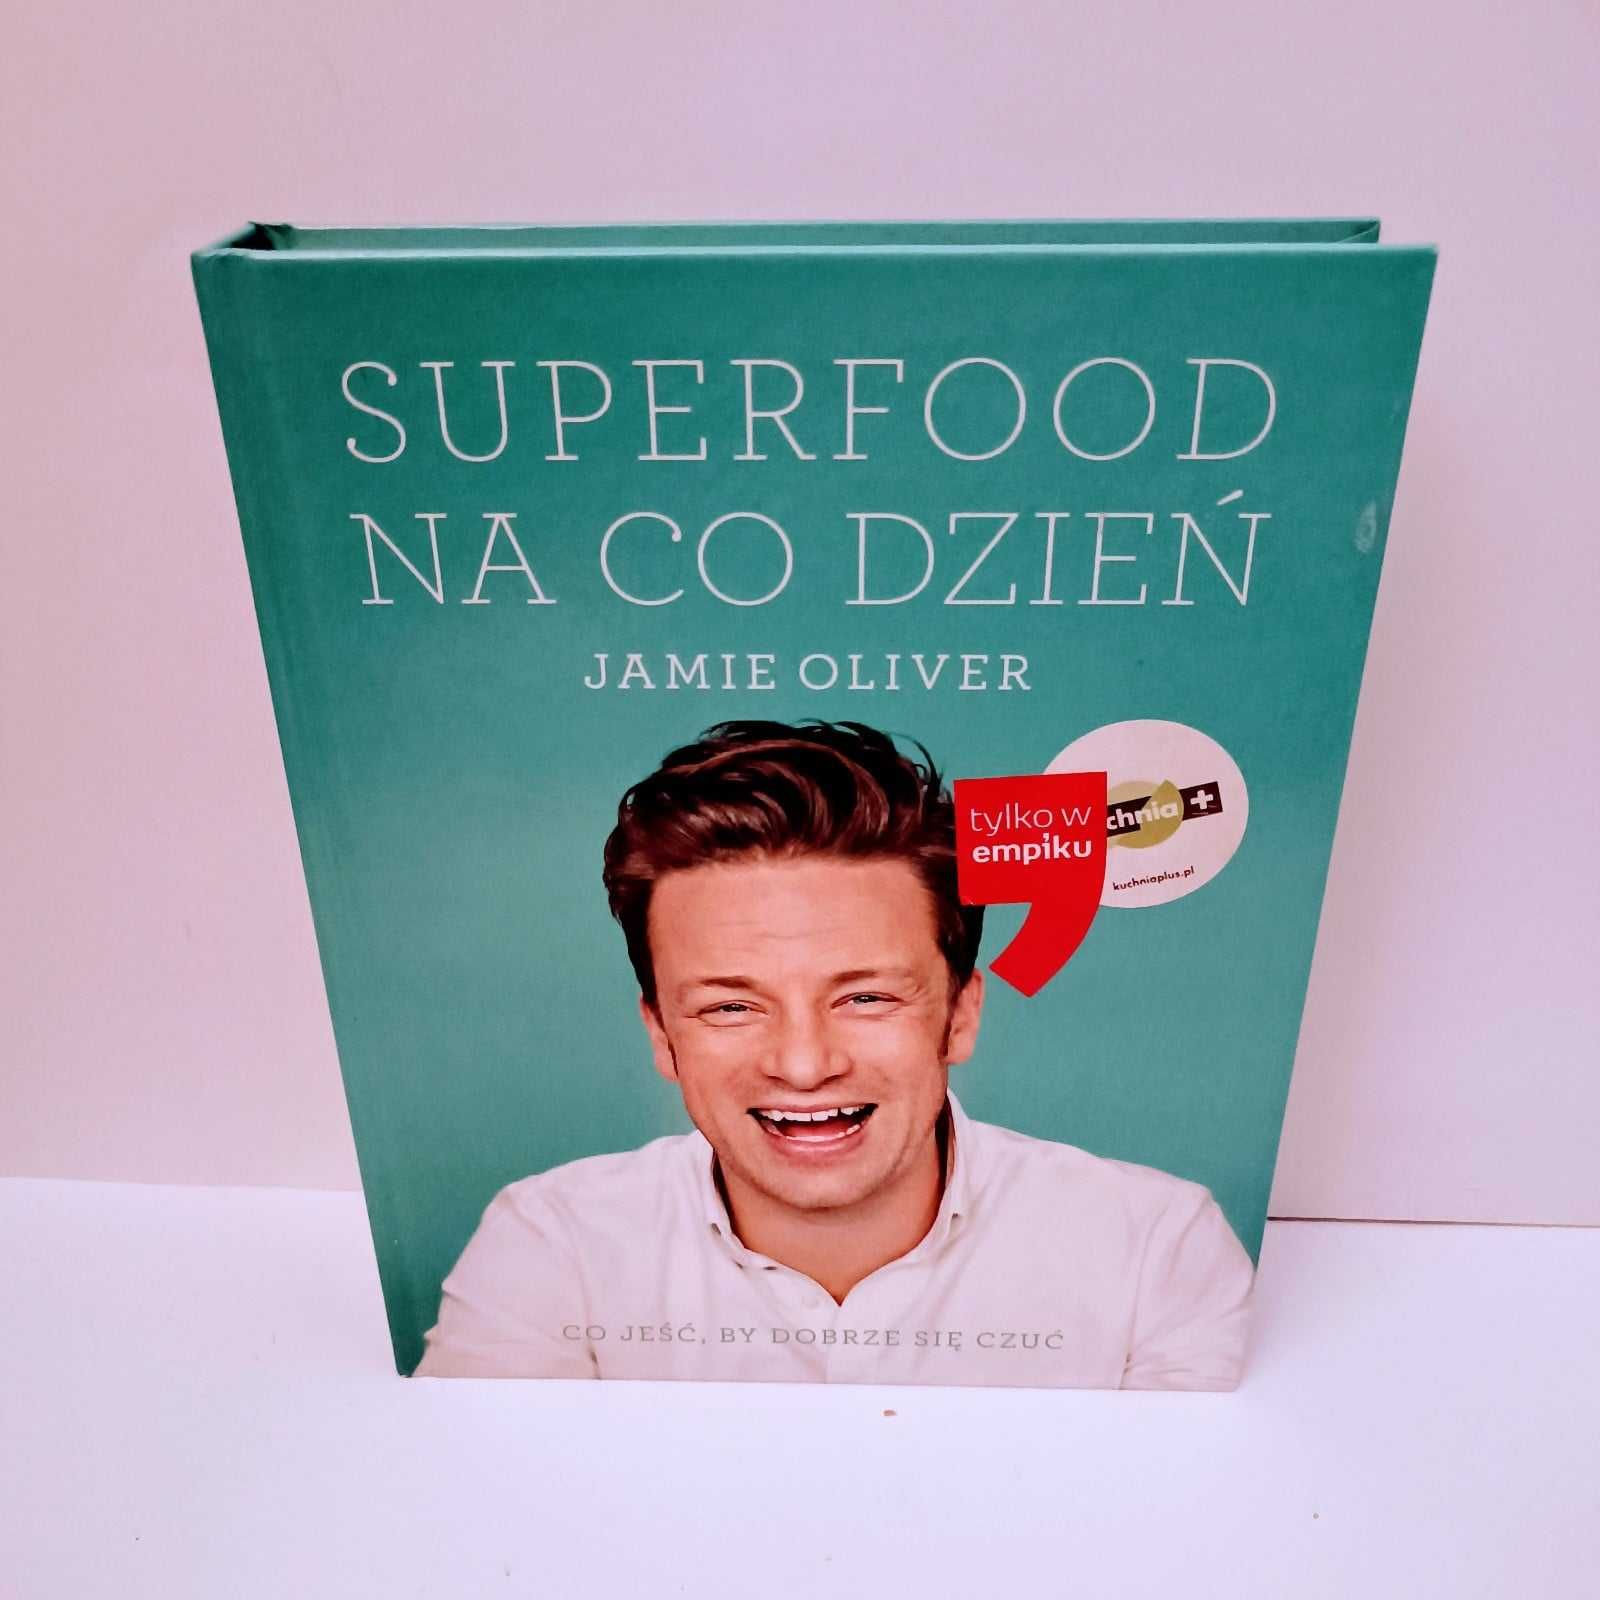 Superfood Jamie Oliver UNIKAT